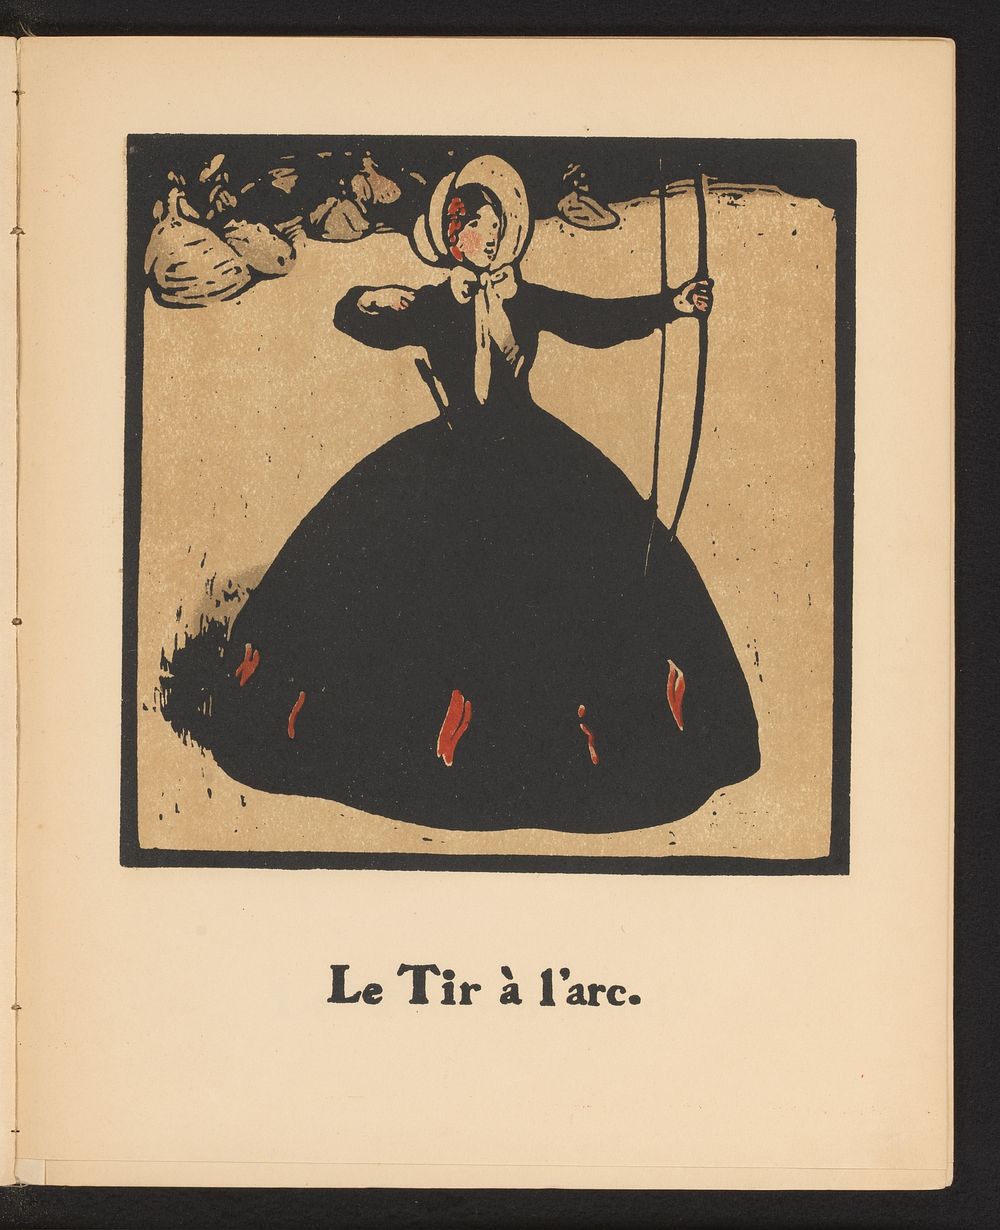 Vrouw met pijl en boog (1898) by William Nicholson and Société Française d éditions d art